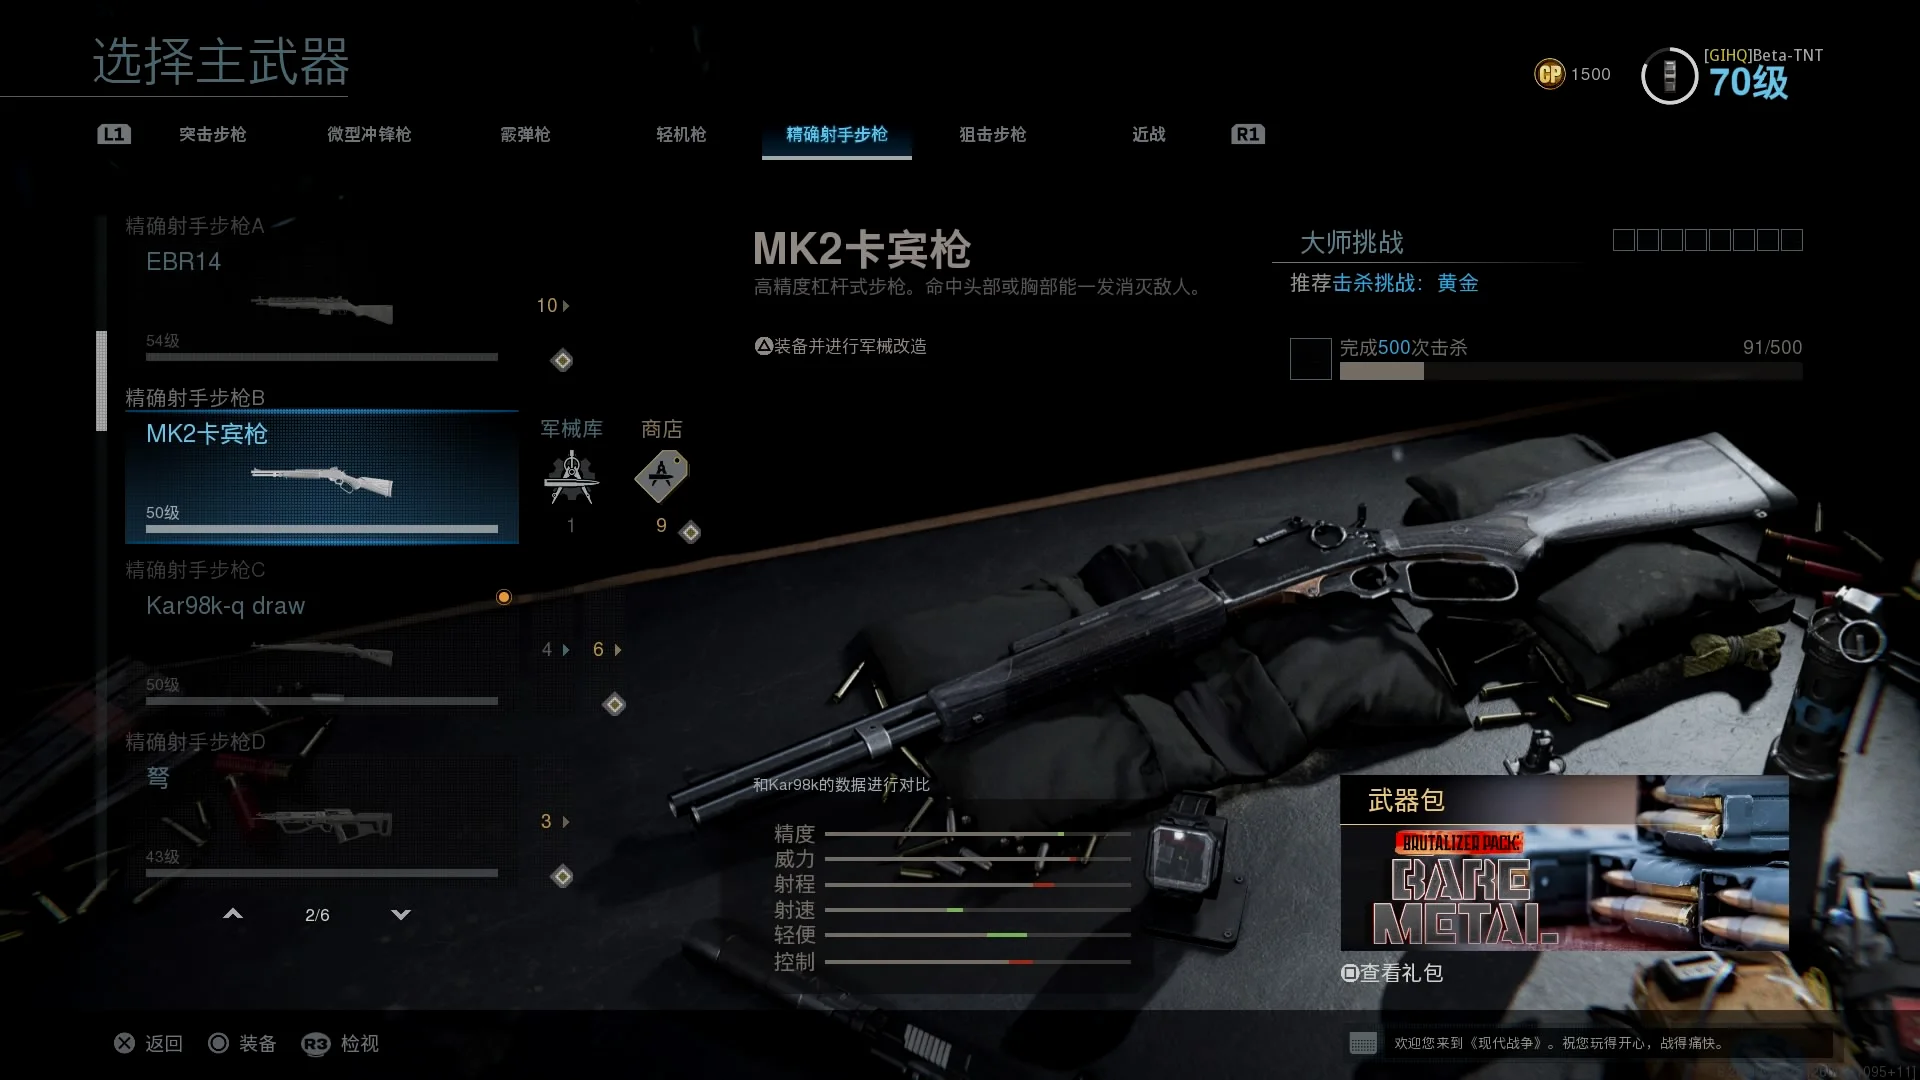 MK2卡宾枪，机动性很好，类似冲锋枪